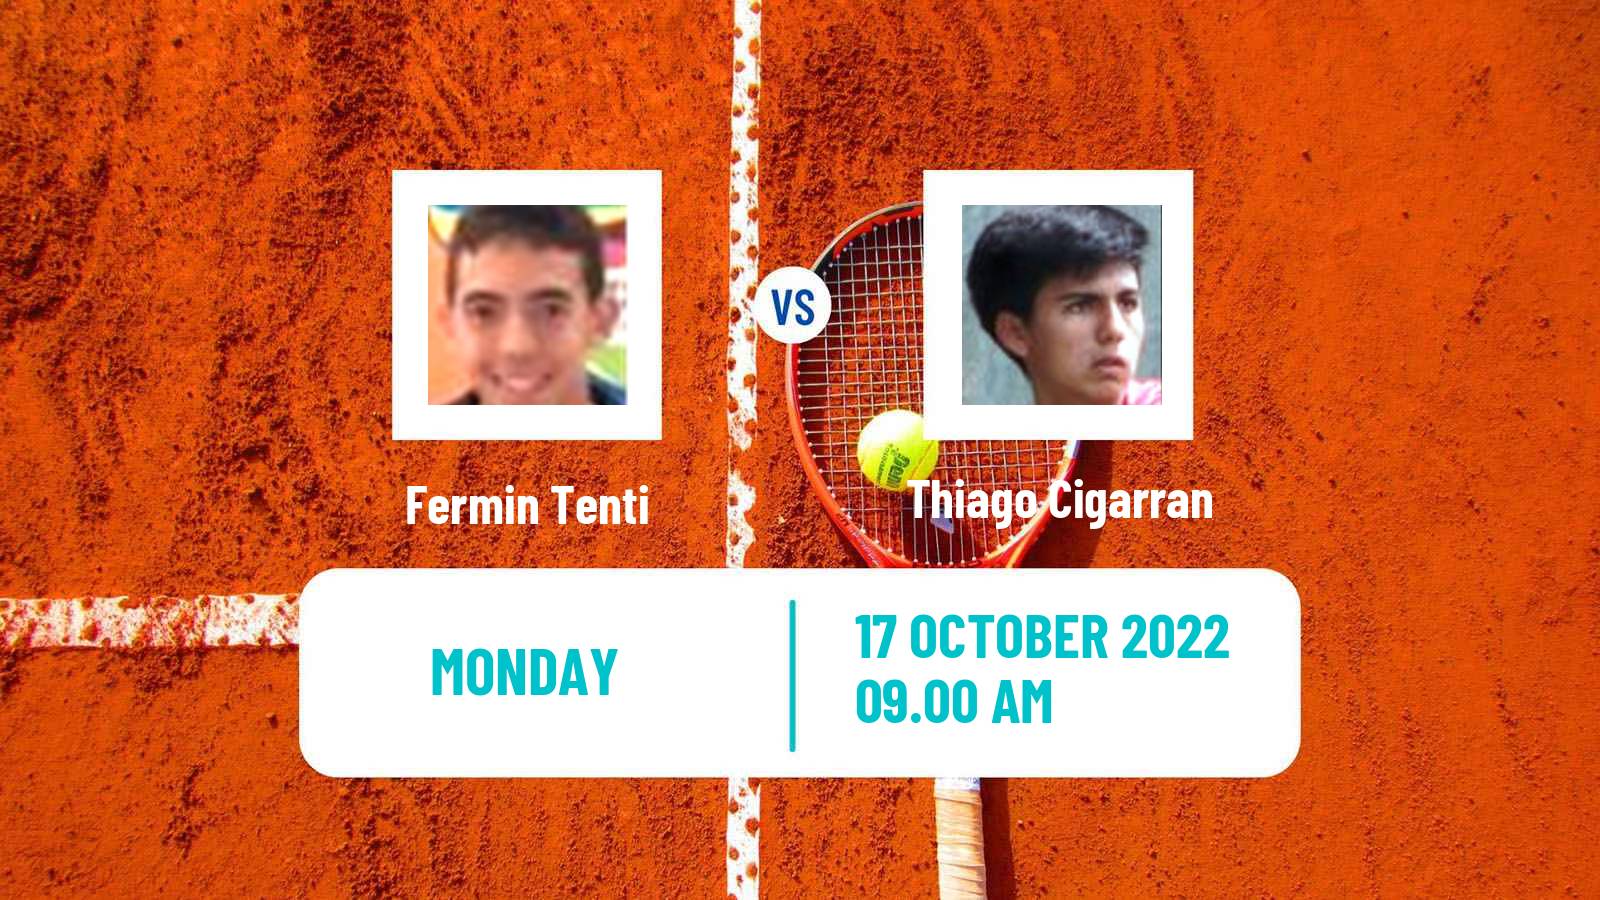 Tennis ATP Challenger Fermin Tenti - Thiago Cigarran